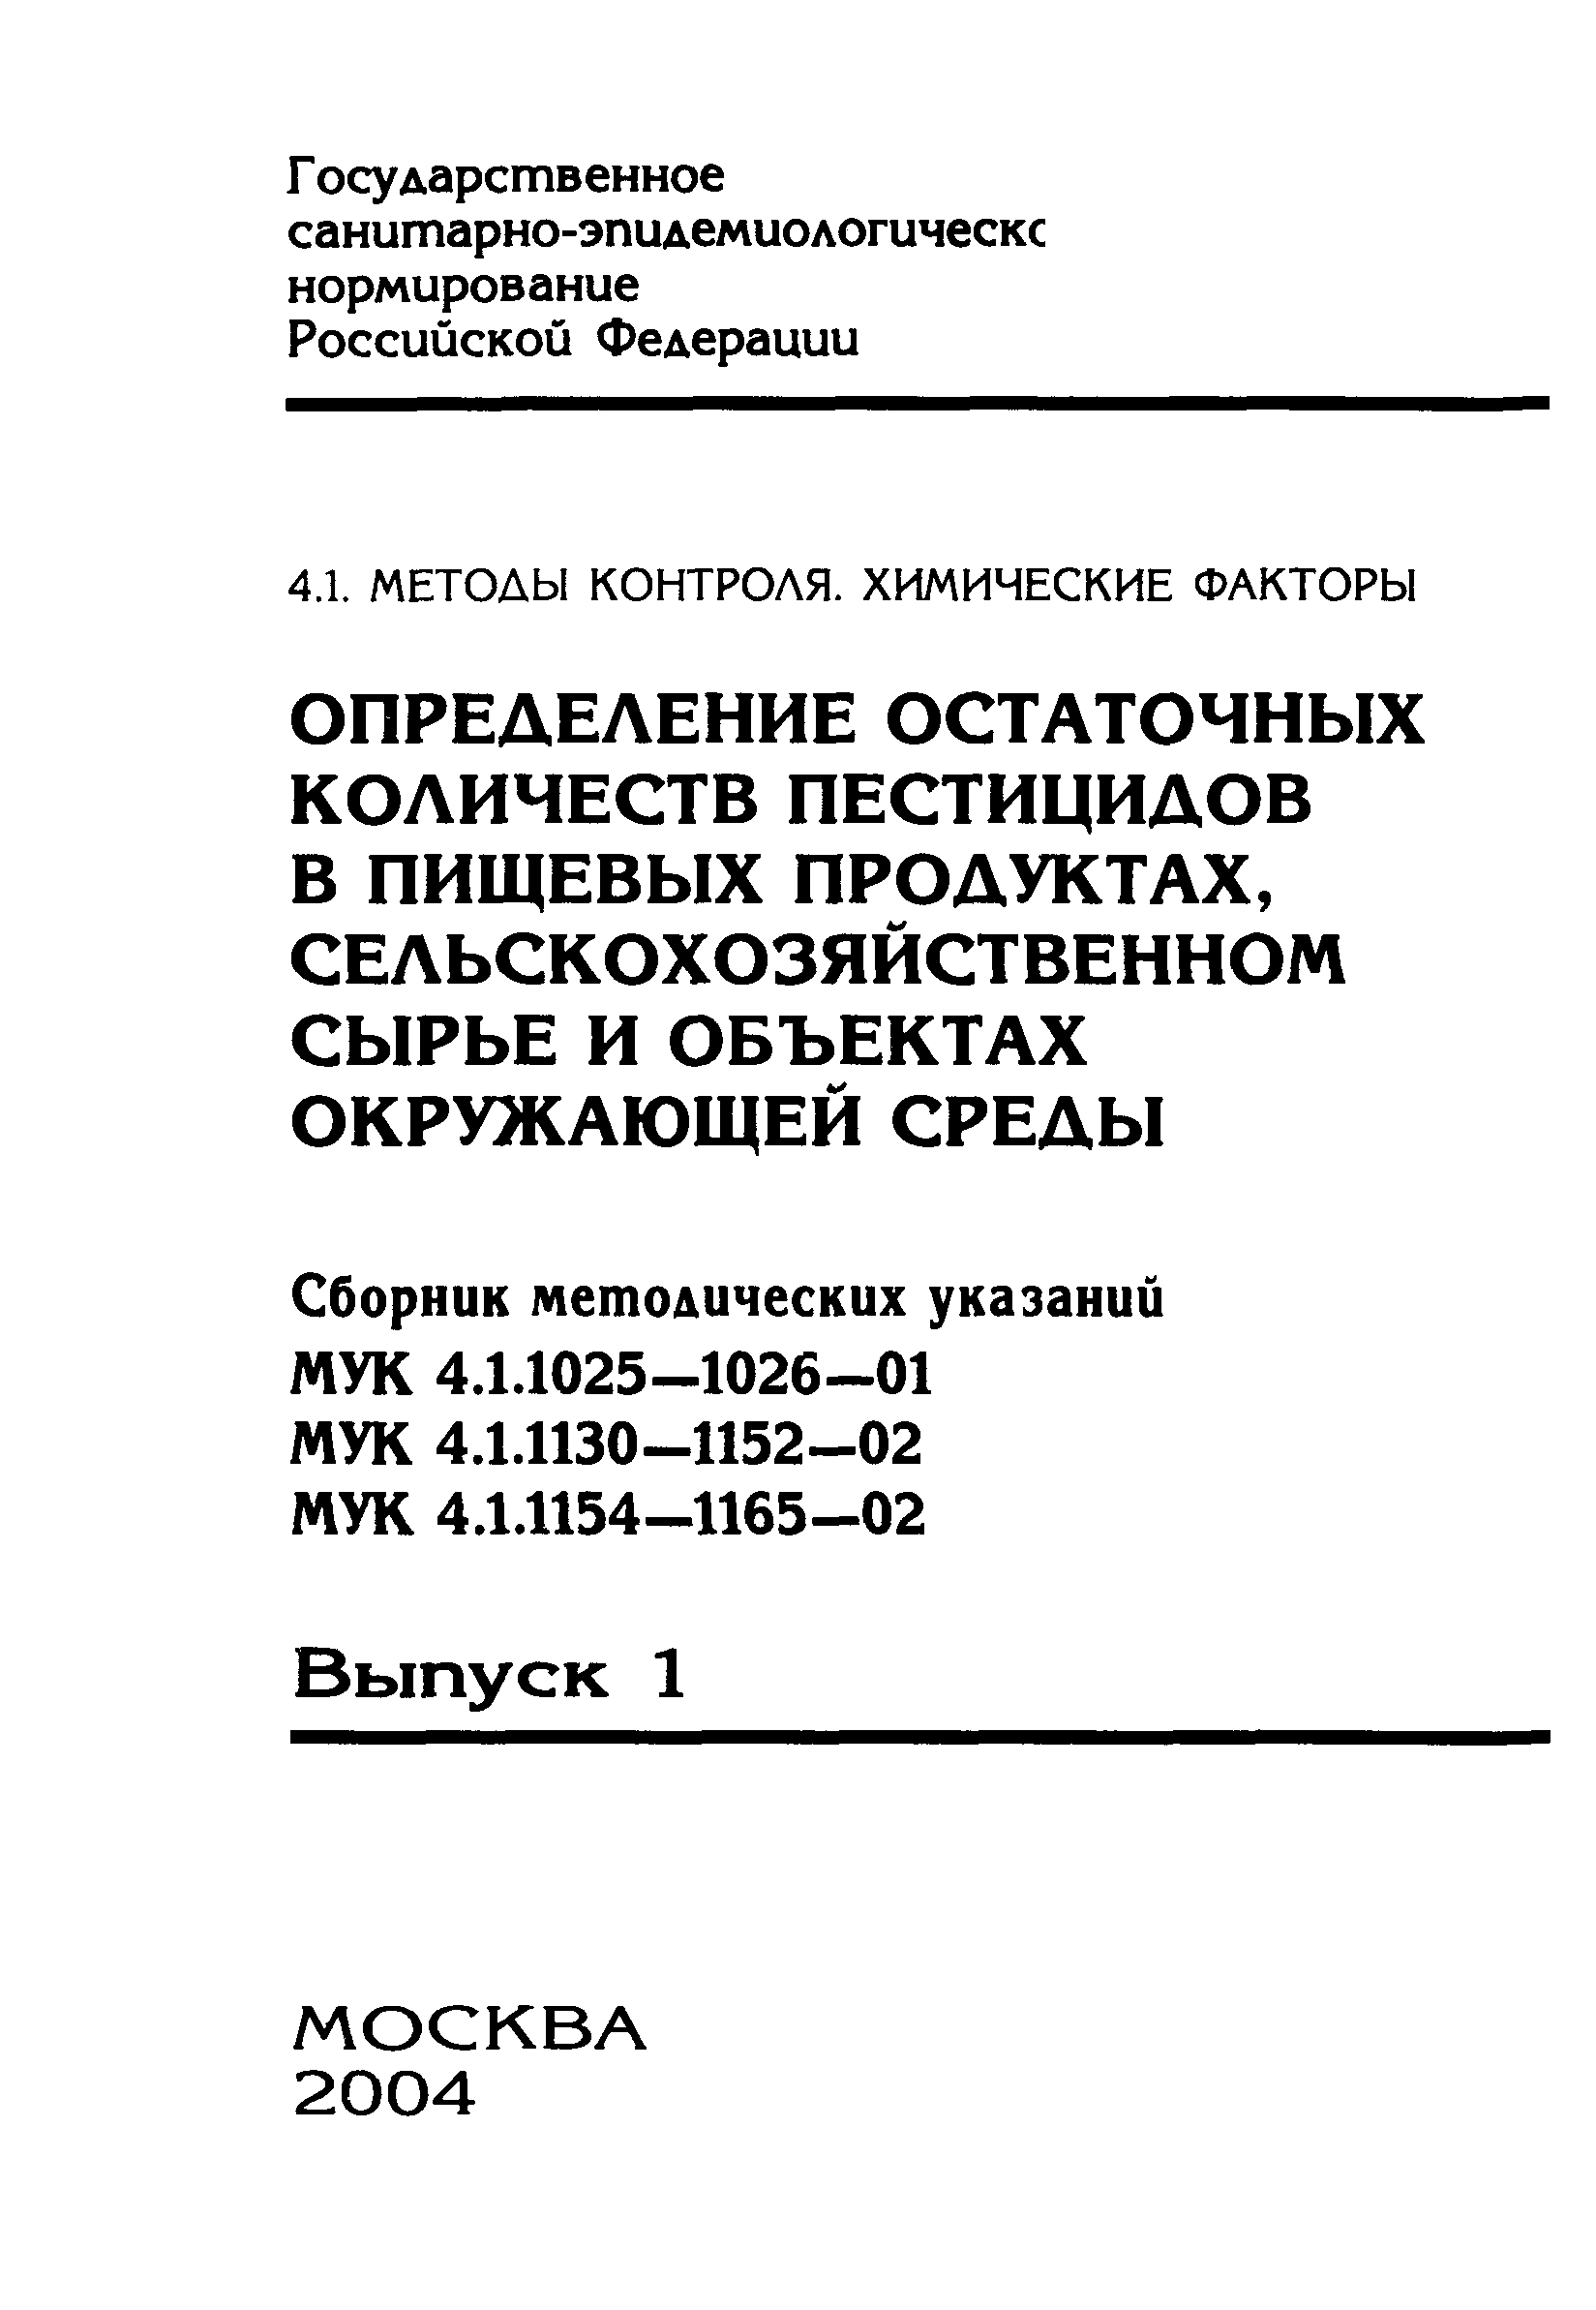 МУК 4.1.1144-02